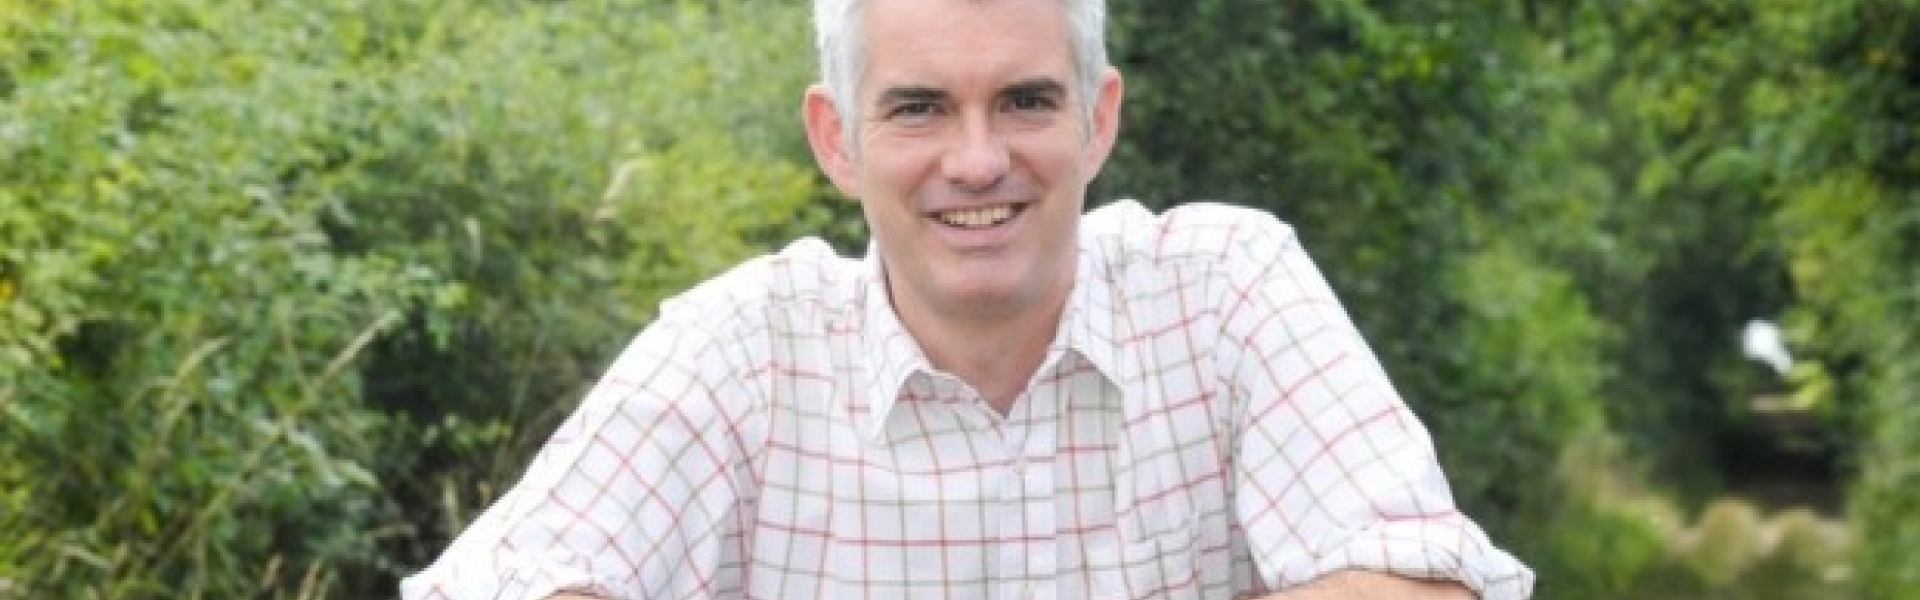 James Cartlidge MP